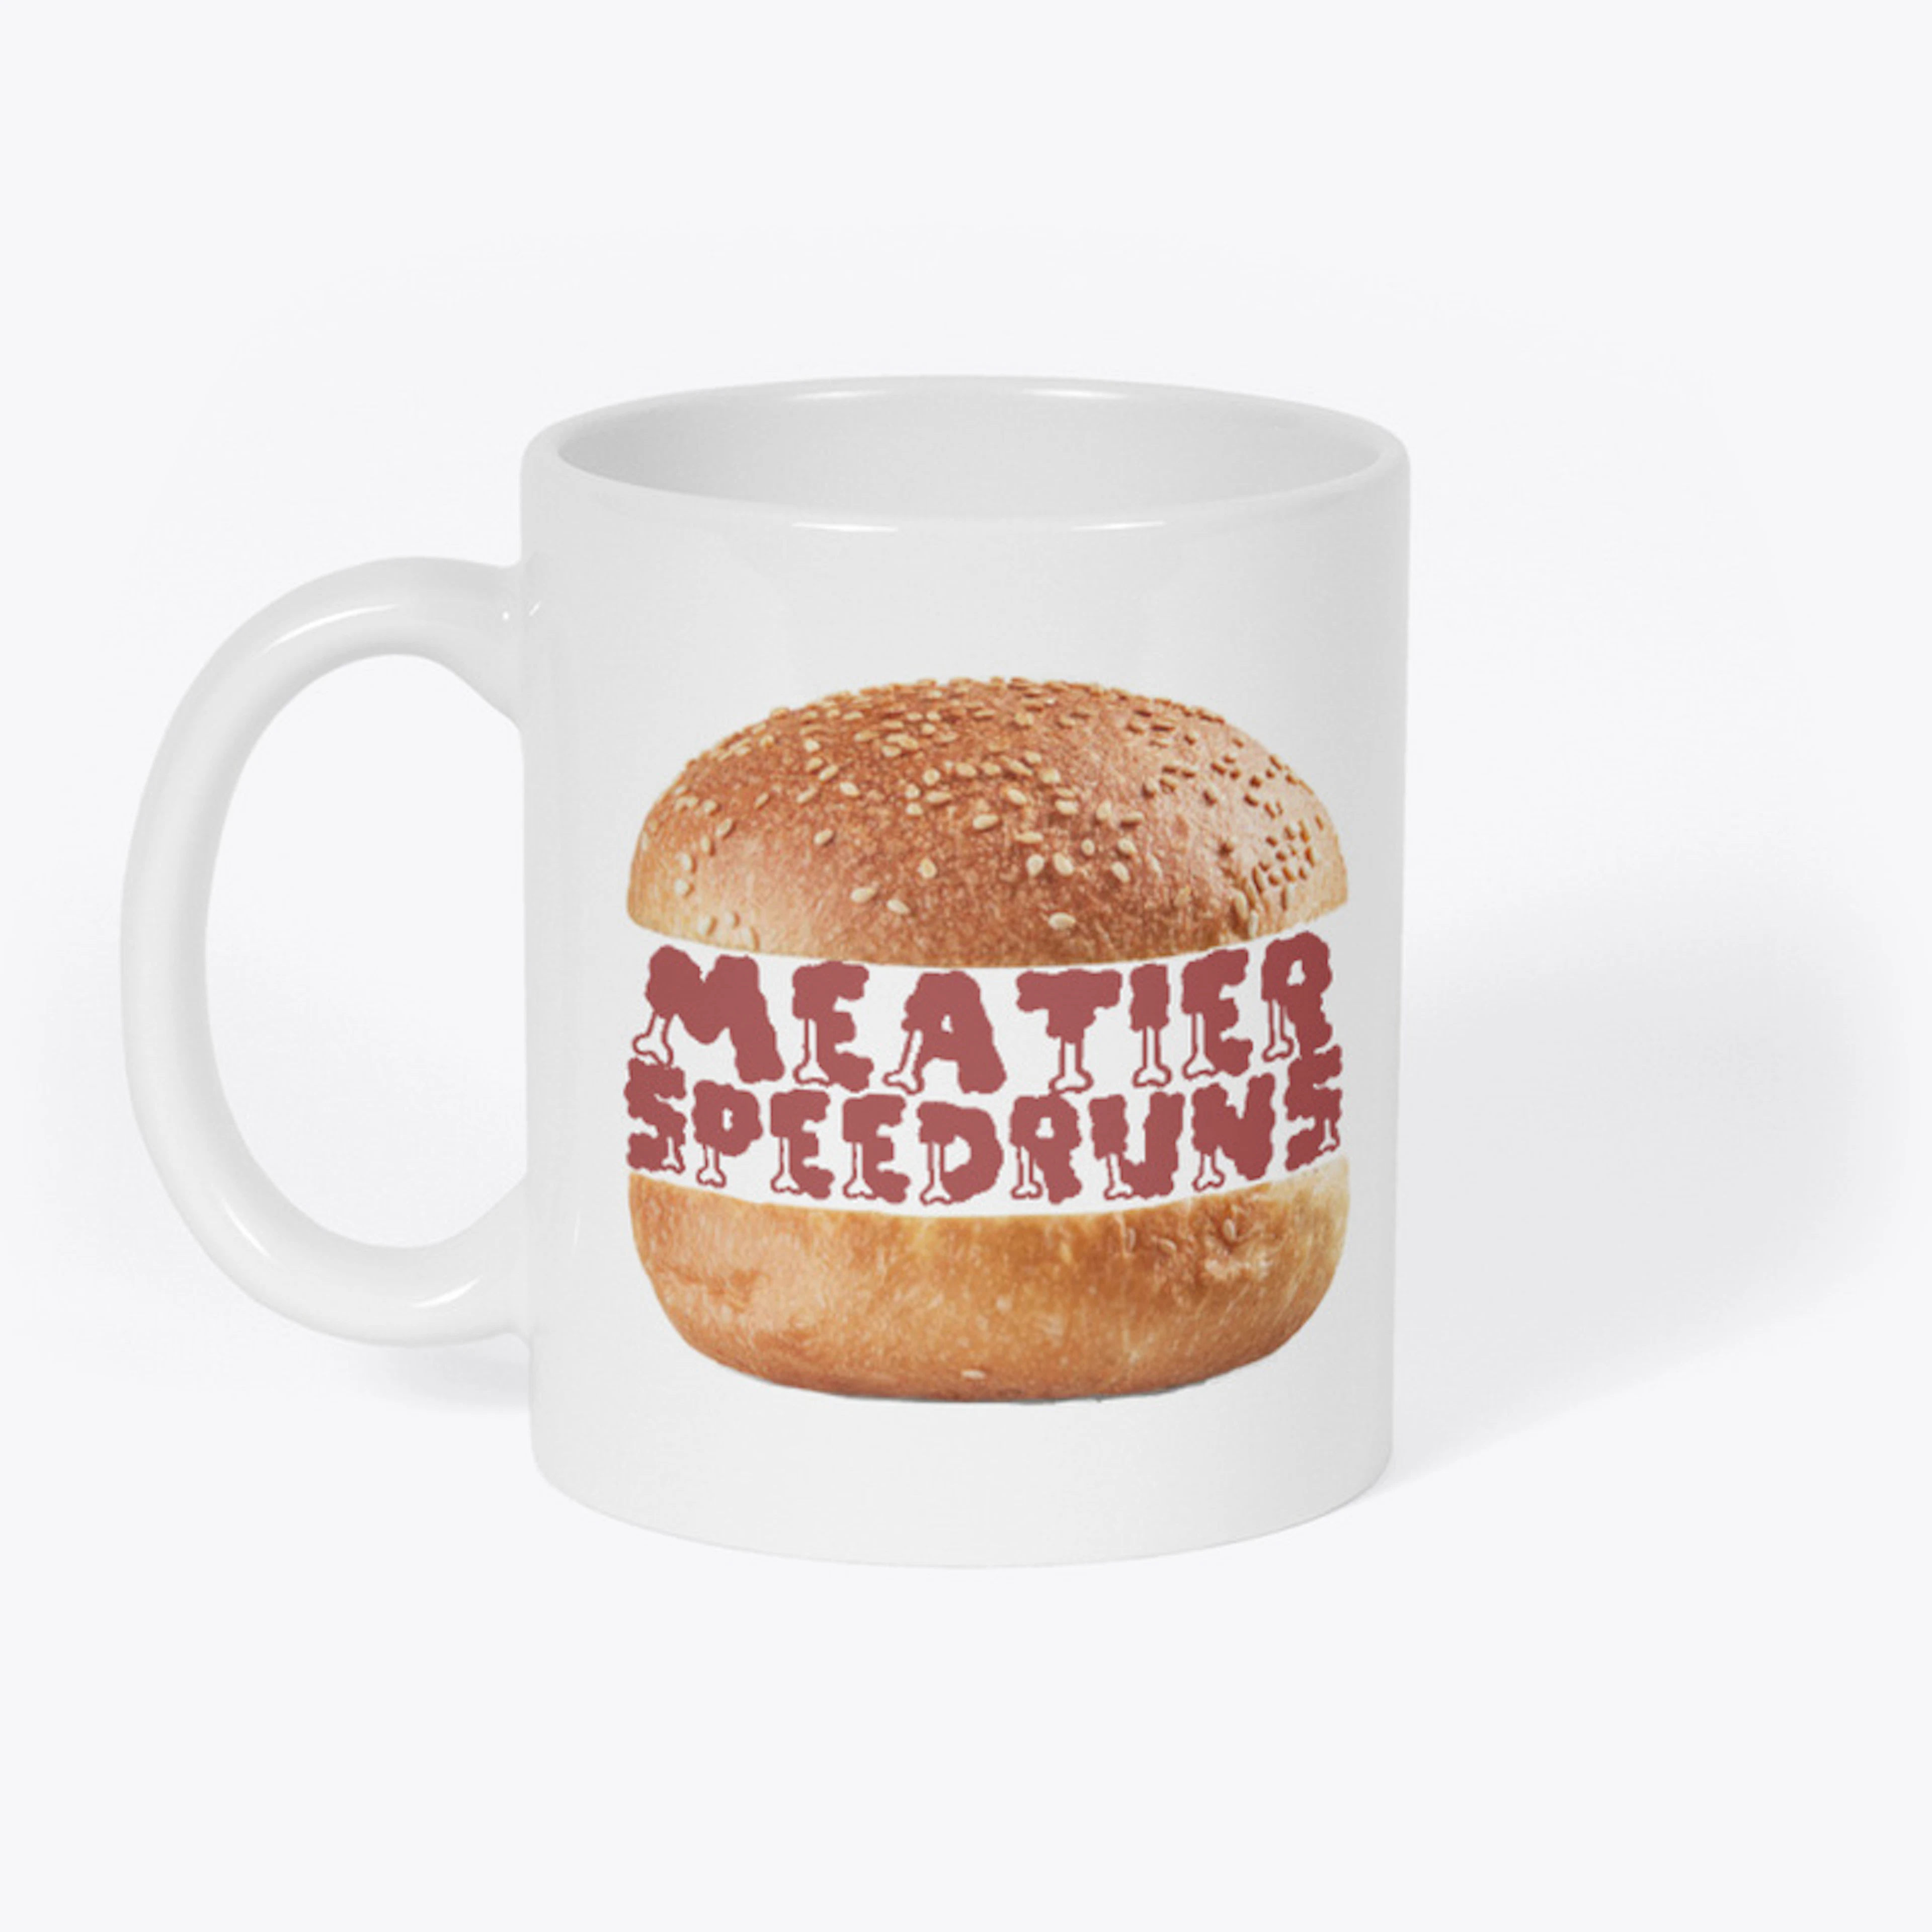 Meatier Speedruns Mug